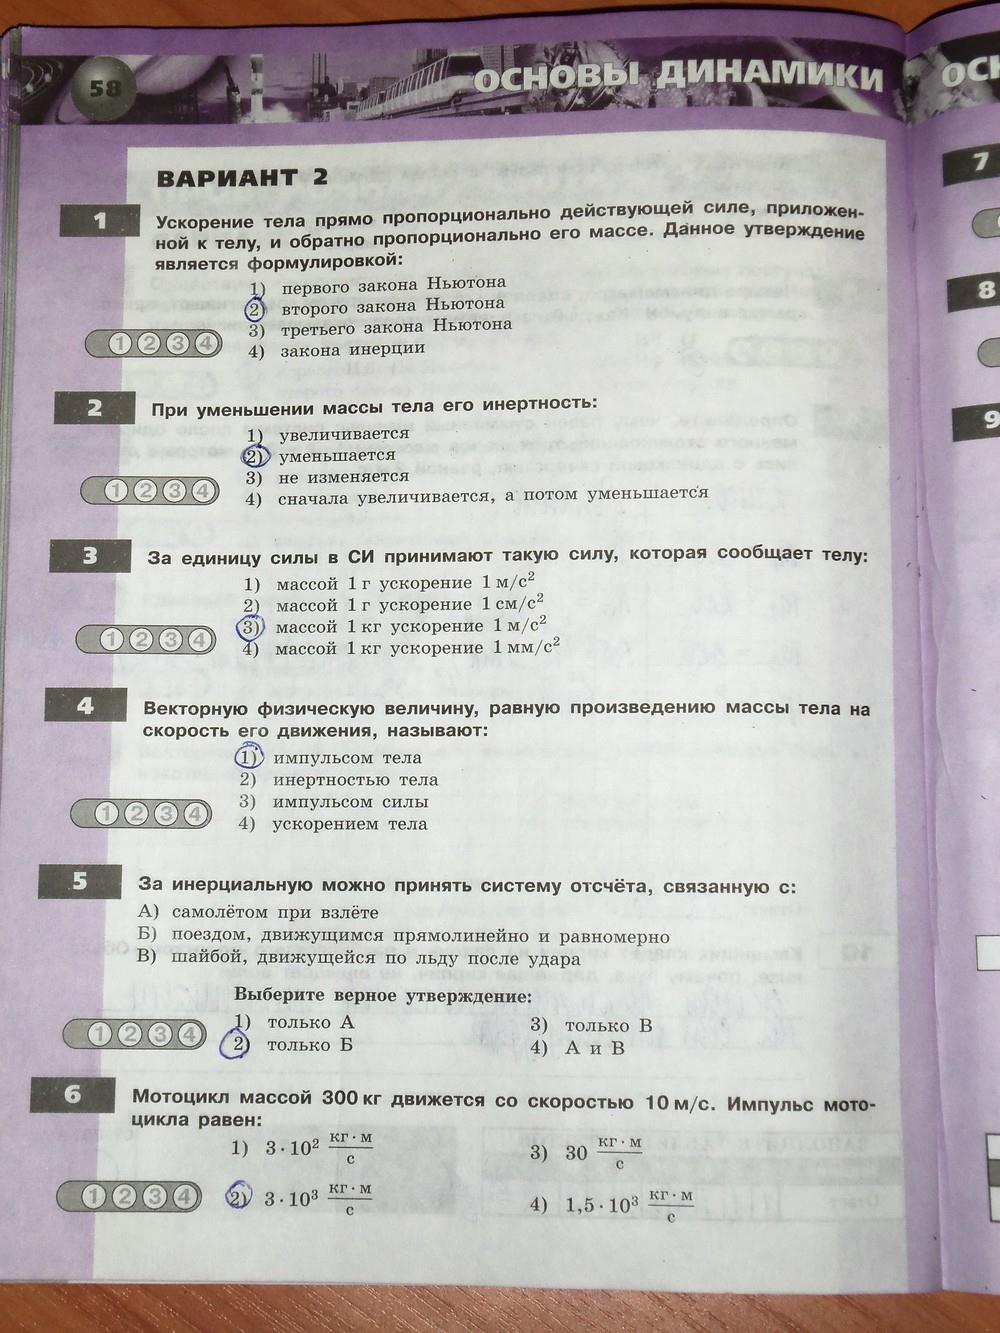 гдз 8 класс тетрадь-экзаменатор страница 58 физика Жумаев